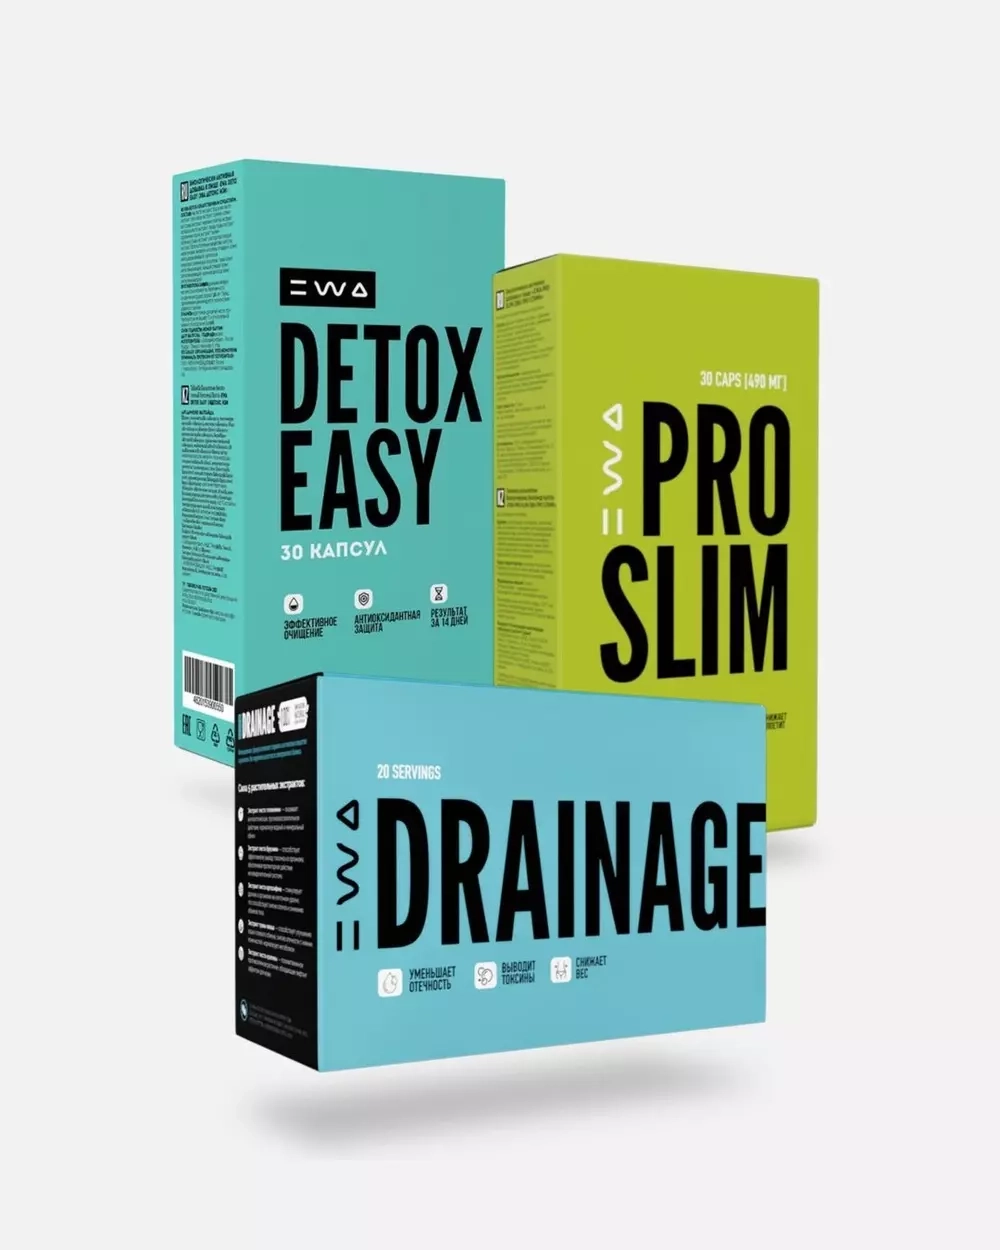 Сет для здорового и комфортного похудения :  DRAINAGE  + PRO SLIM + DETOX EASY